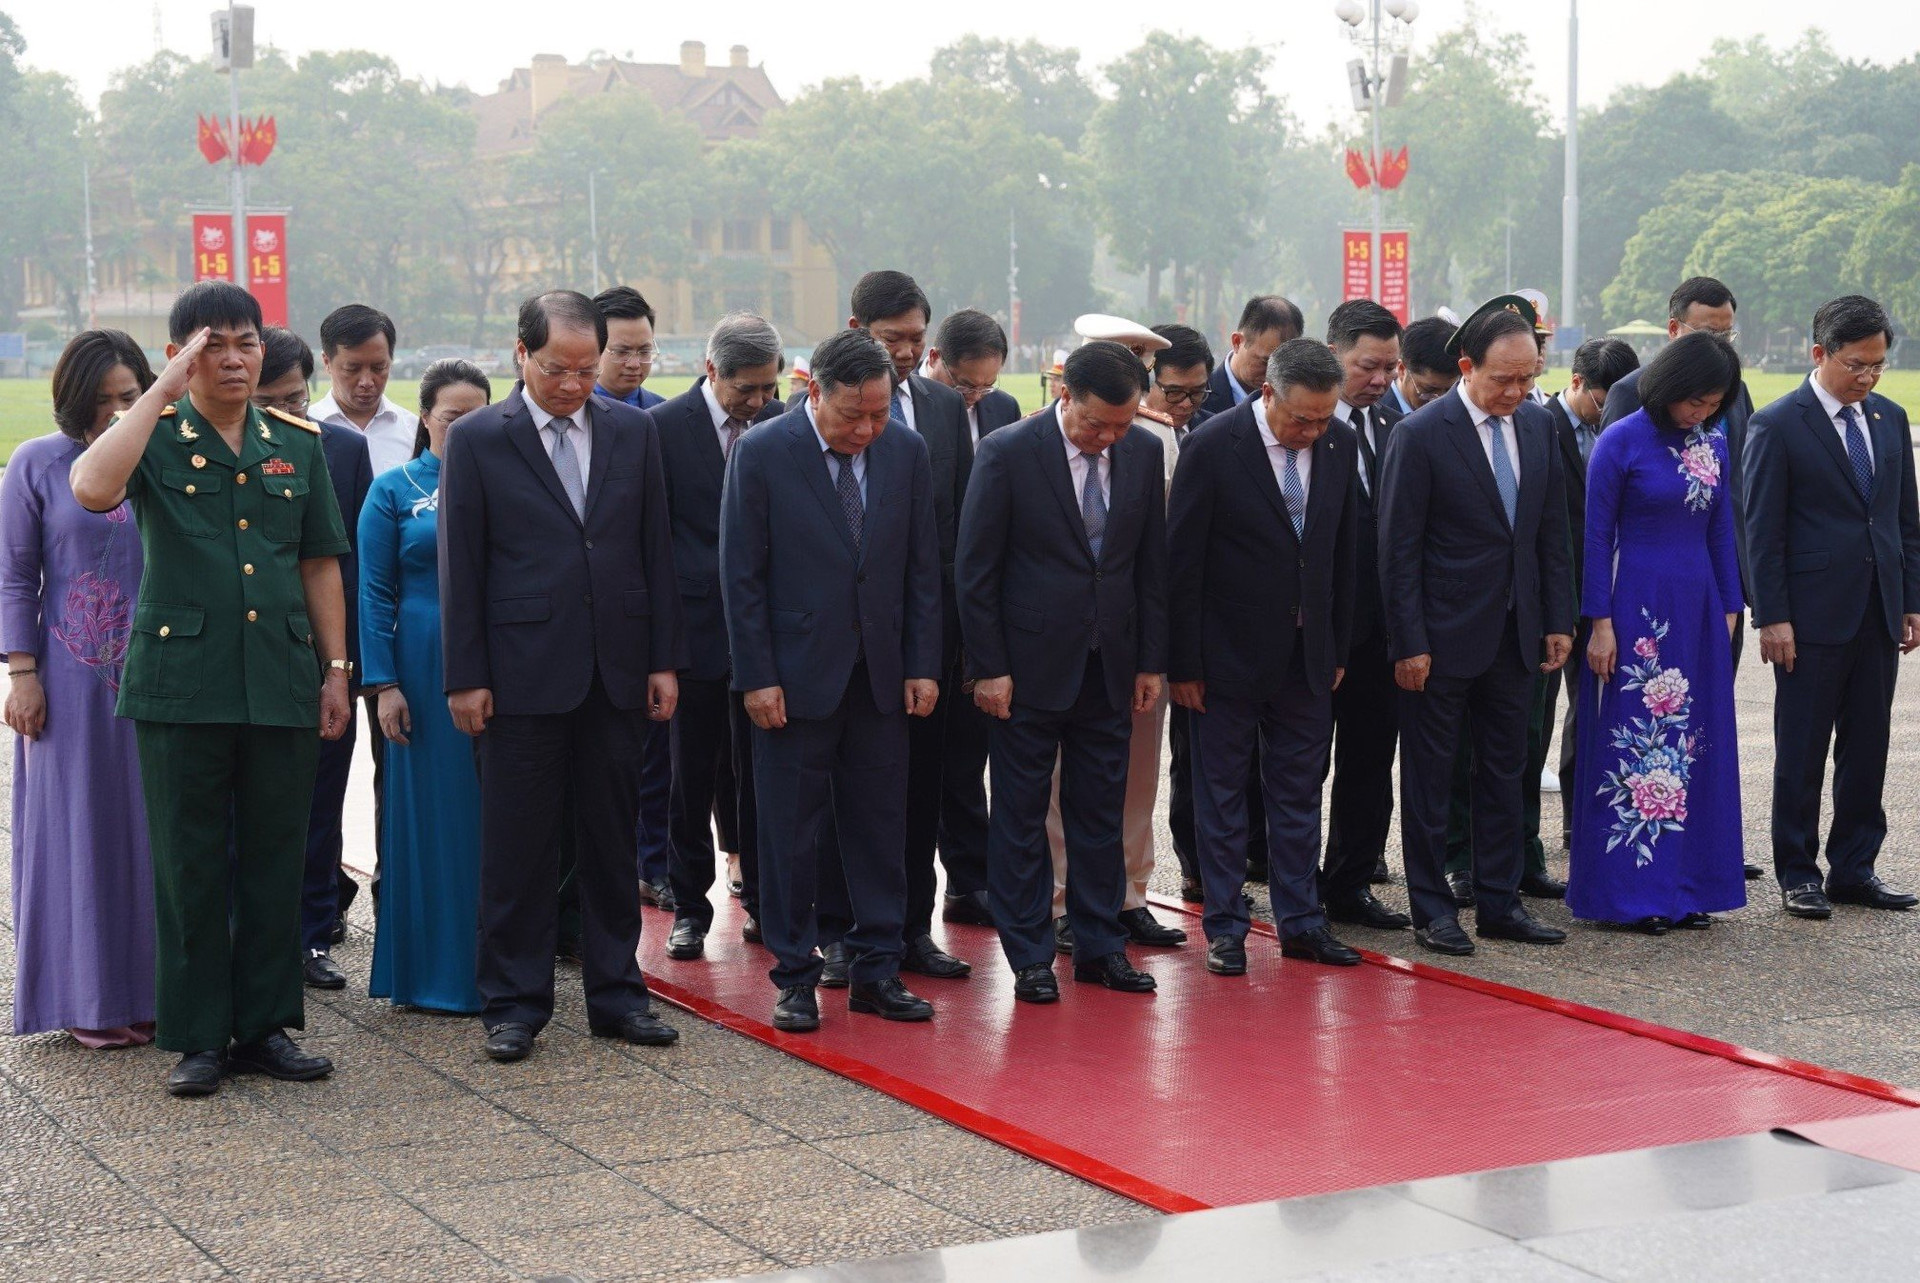 Các đồng chí lãnh đạo thành phố Hà Nội kính cẩn nghiêng mình tưởng niệm anh linh Chủ tịch Hồ Chí Minh. Ảnh: Hữu Tiệp.